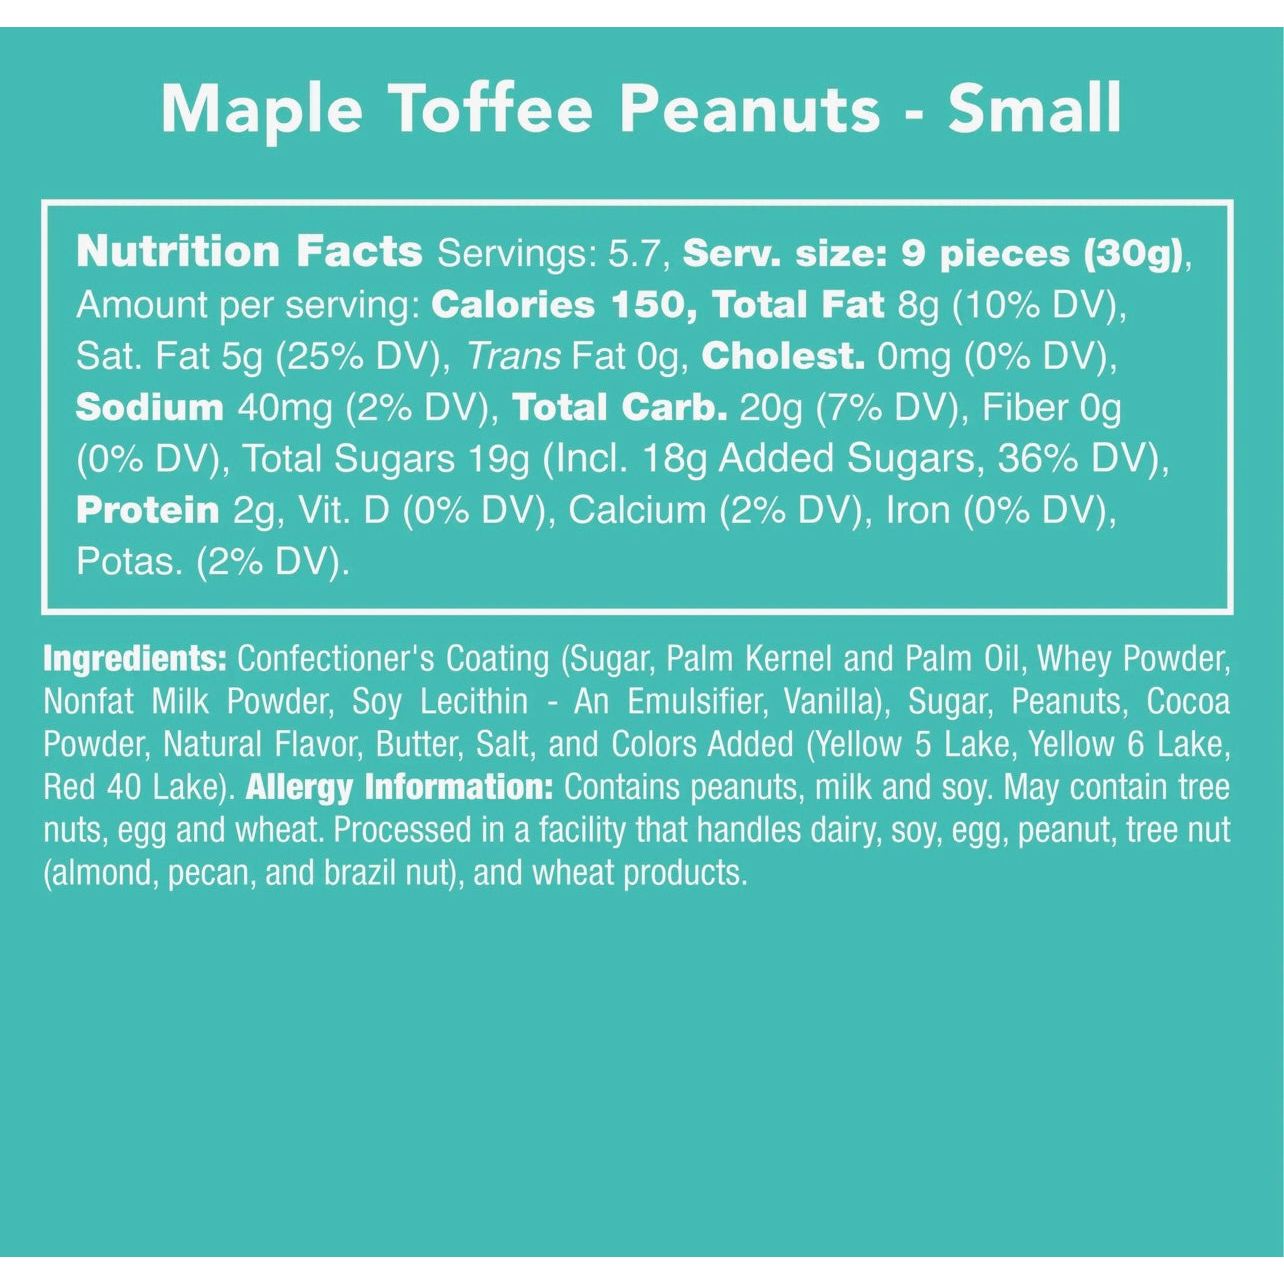 Maple toffee peanuts